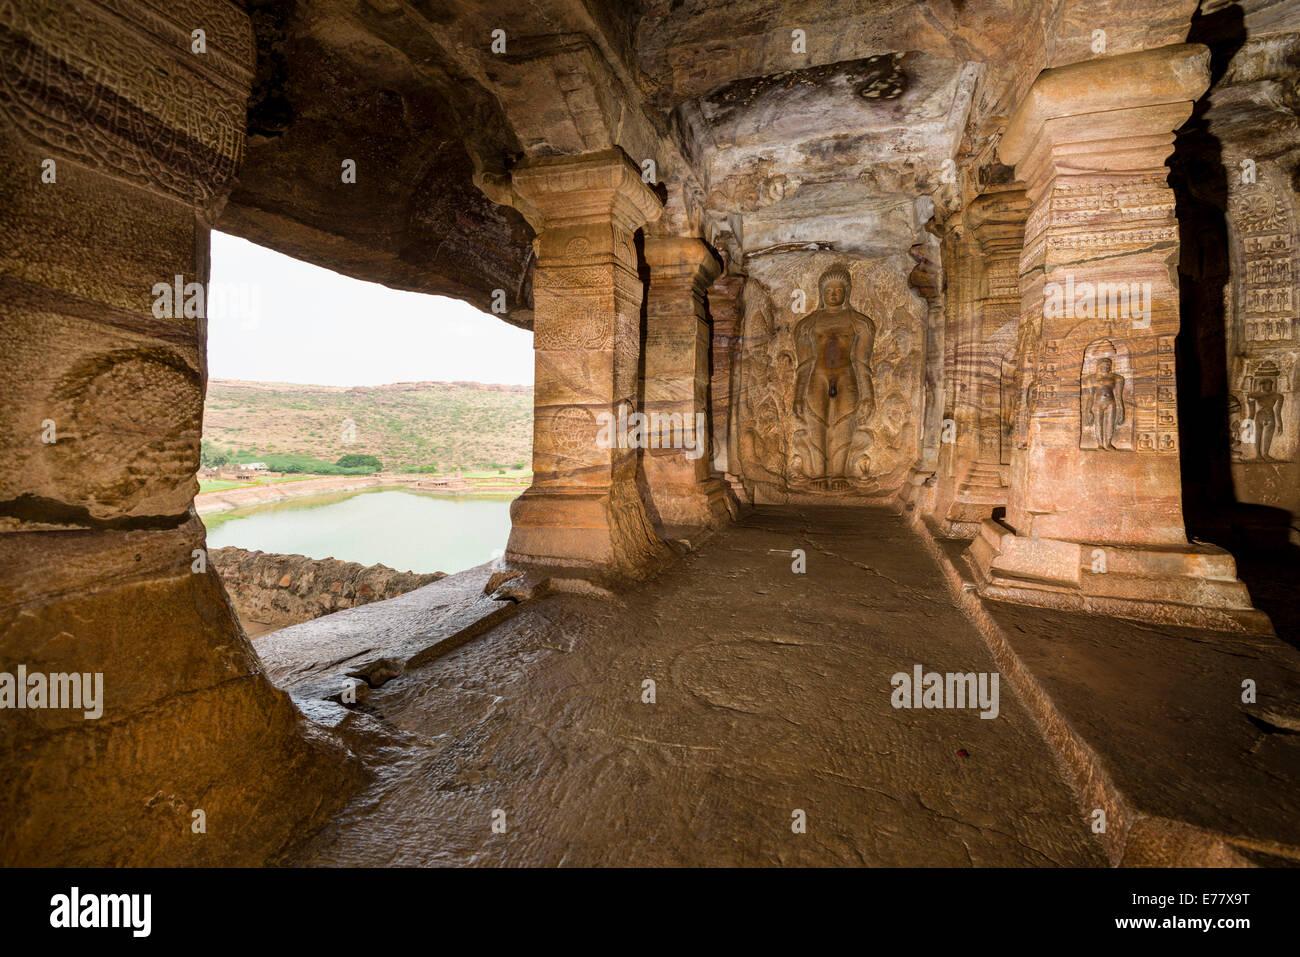 Badami grottes taillées dans la roche solide lors de la 6e à la 7e siècle, sculptés dans la roche solide, Badami, Karnataka, Inde Banque D'Images